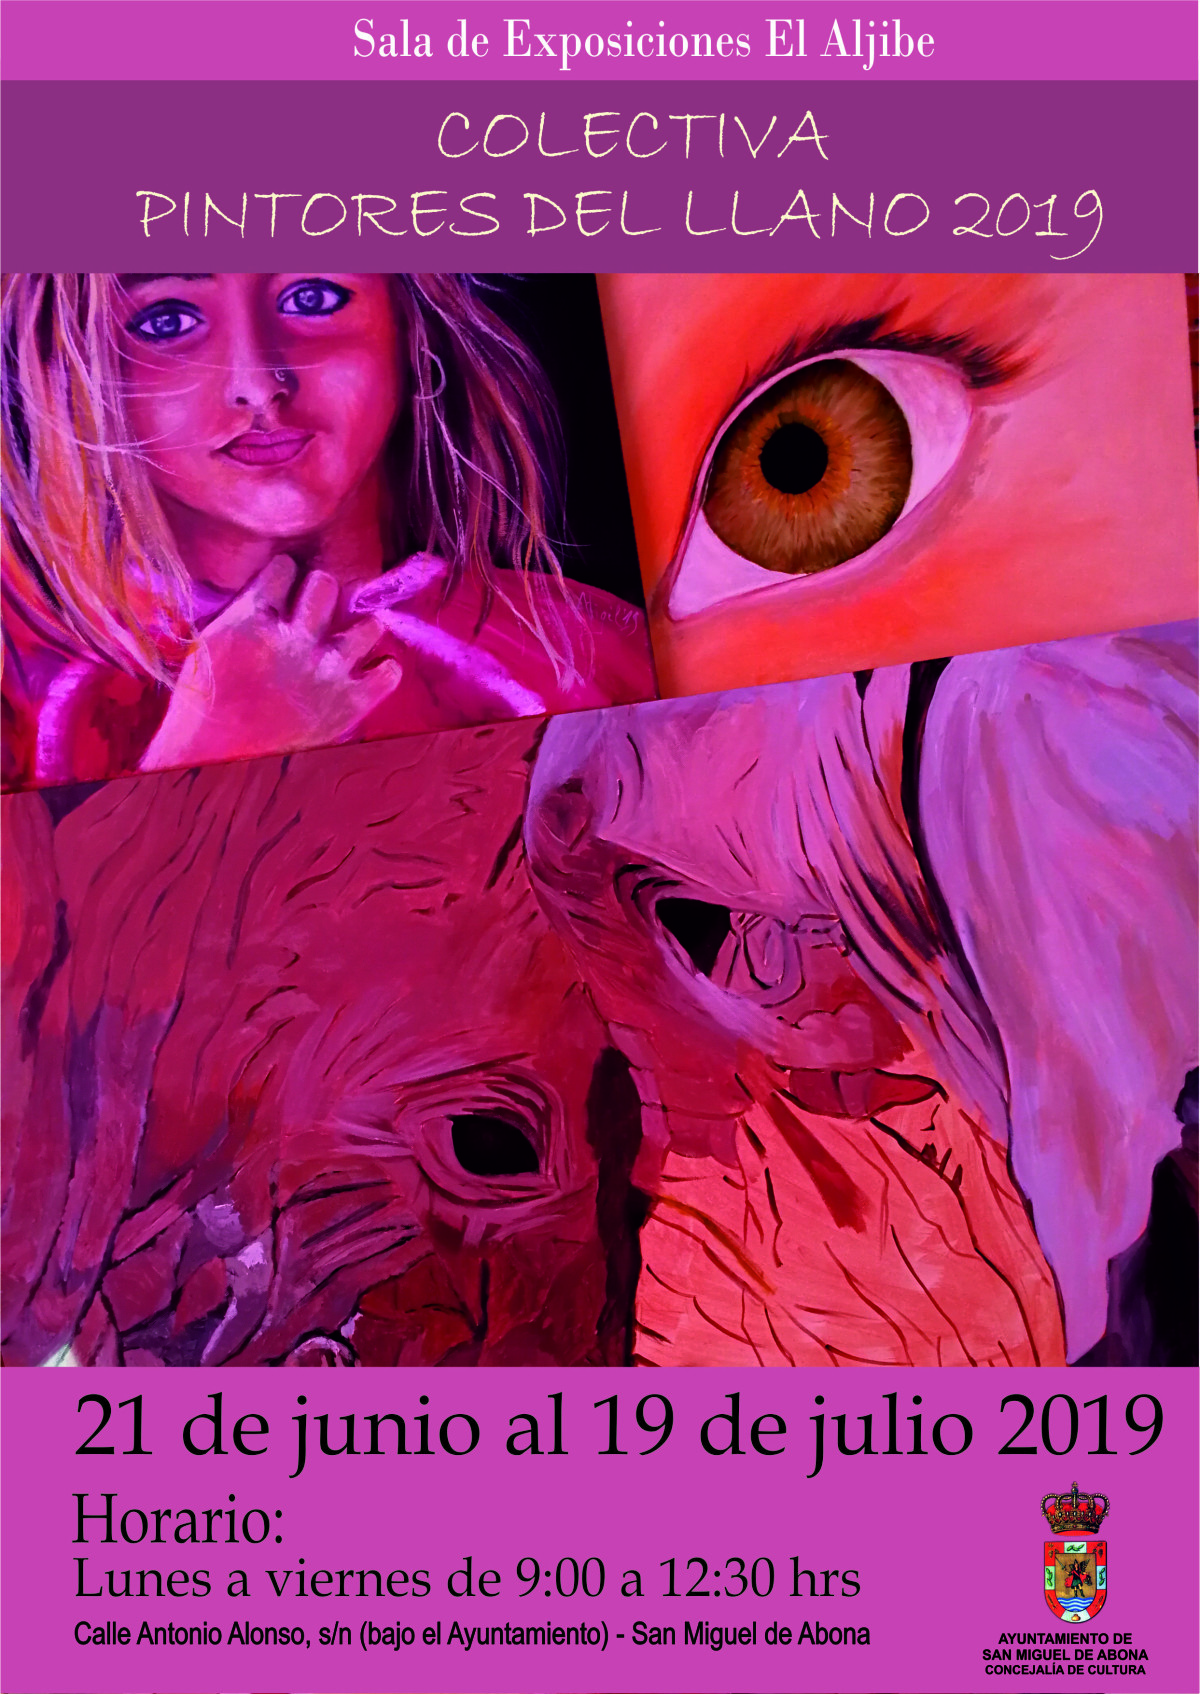 La sala de exposiciones El Aljibe acogerá la colectiva “Pintores del Llano 2019”